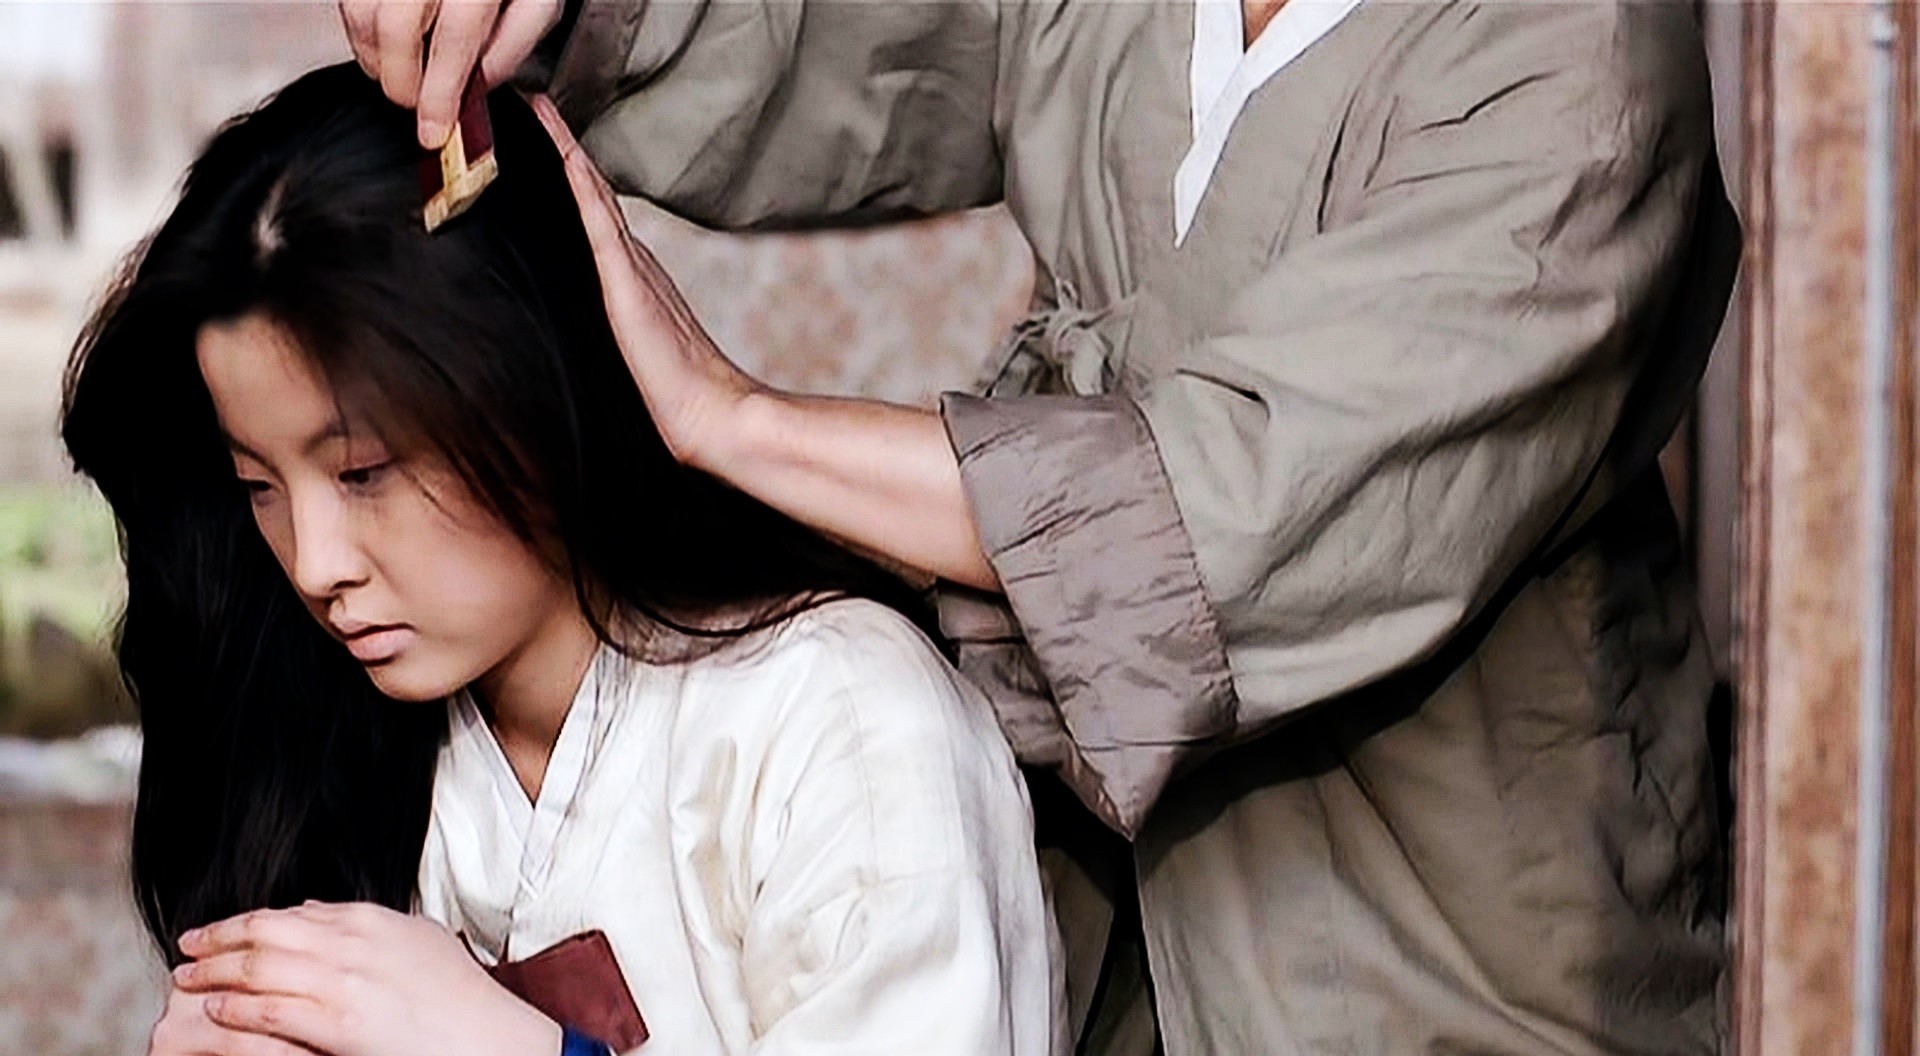 इतिहास रचेको सर्वाधिक प्रशंसित कोरियाली फिल्म, हेर्नुहोस् युट्युबमा